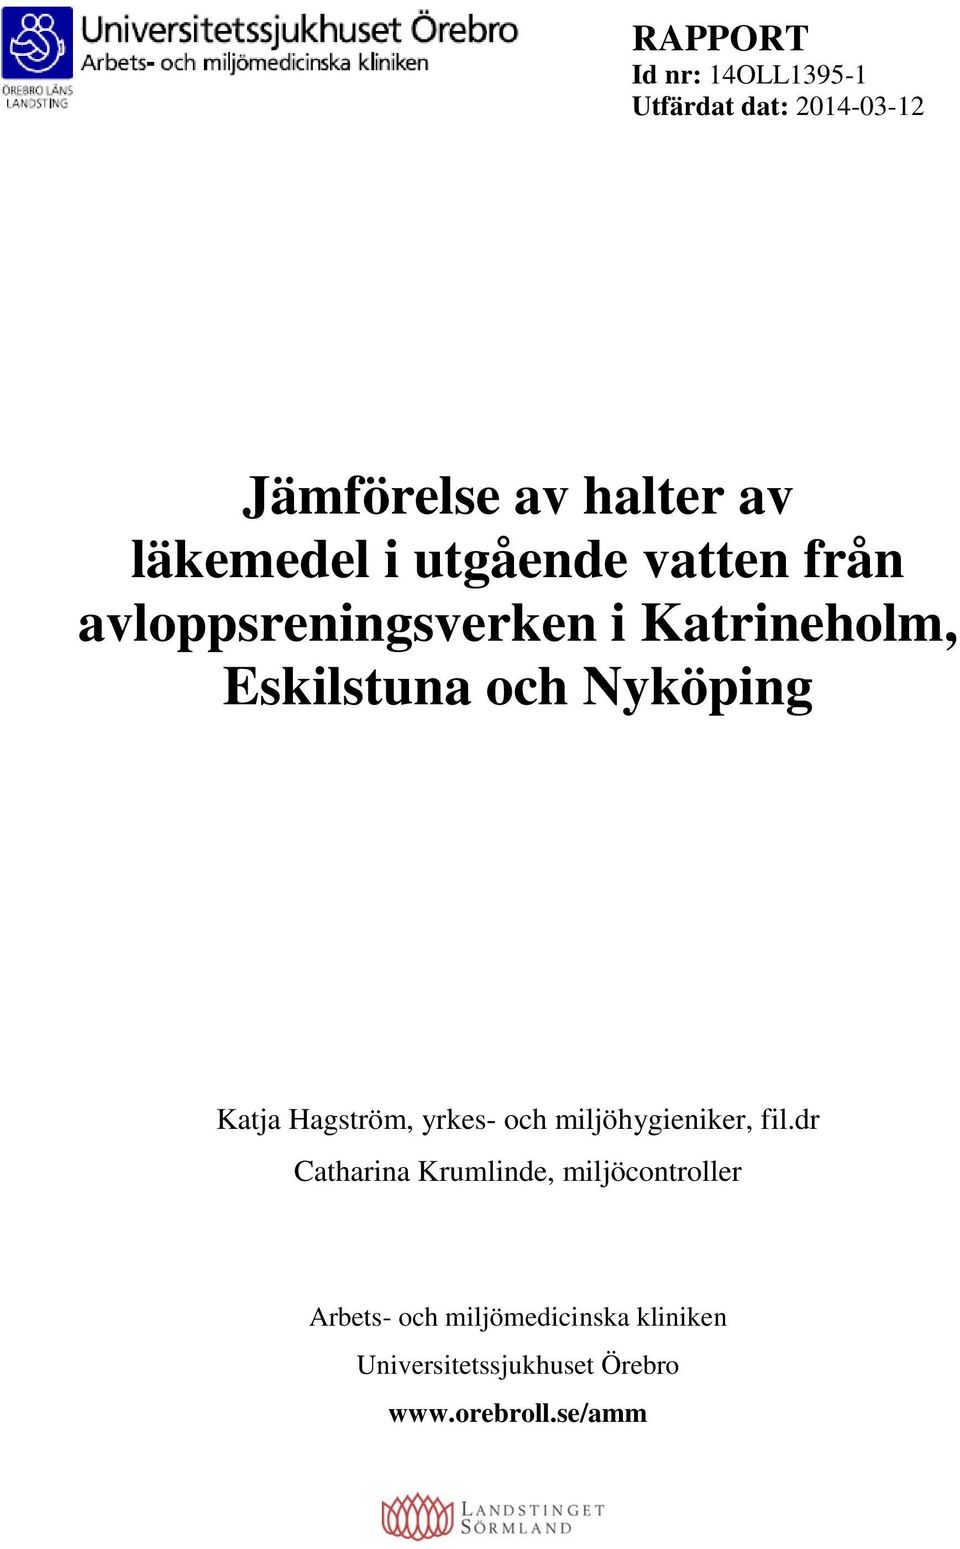 Katja Hagström, yrkes- och miljöhygieniker, fil.